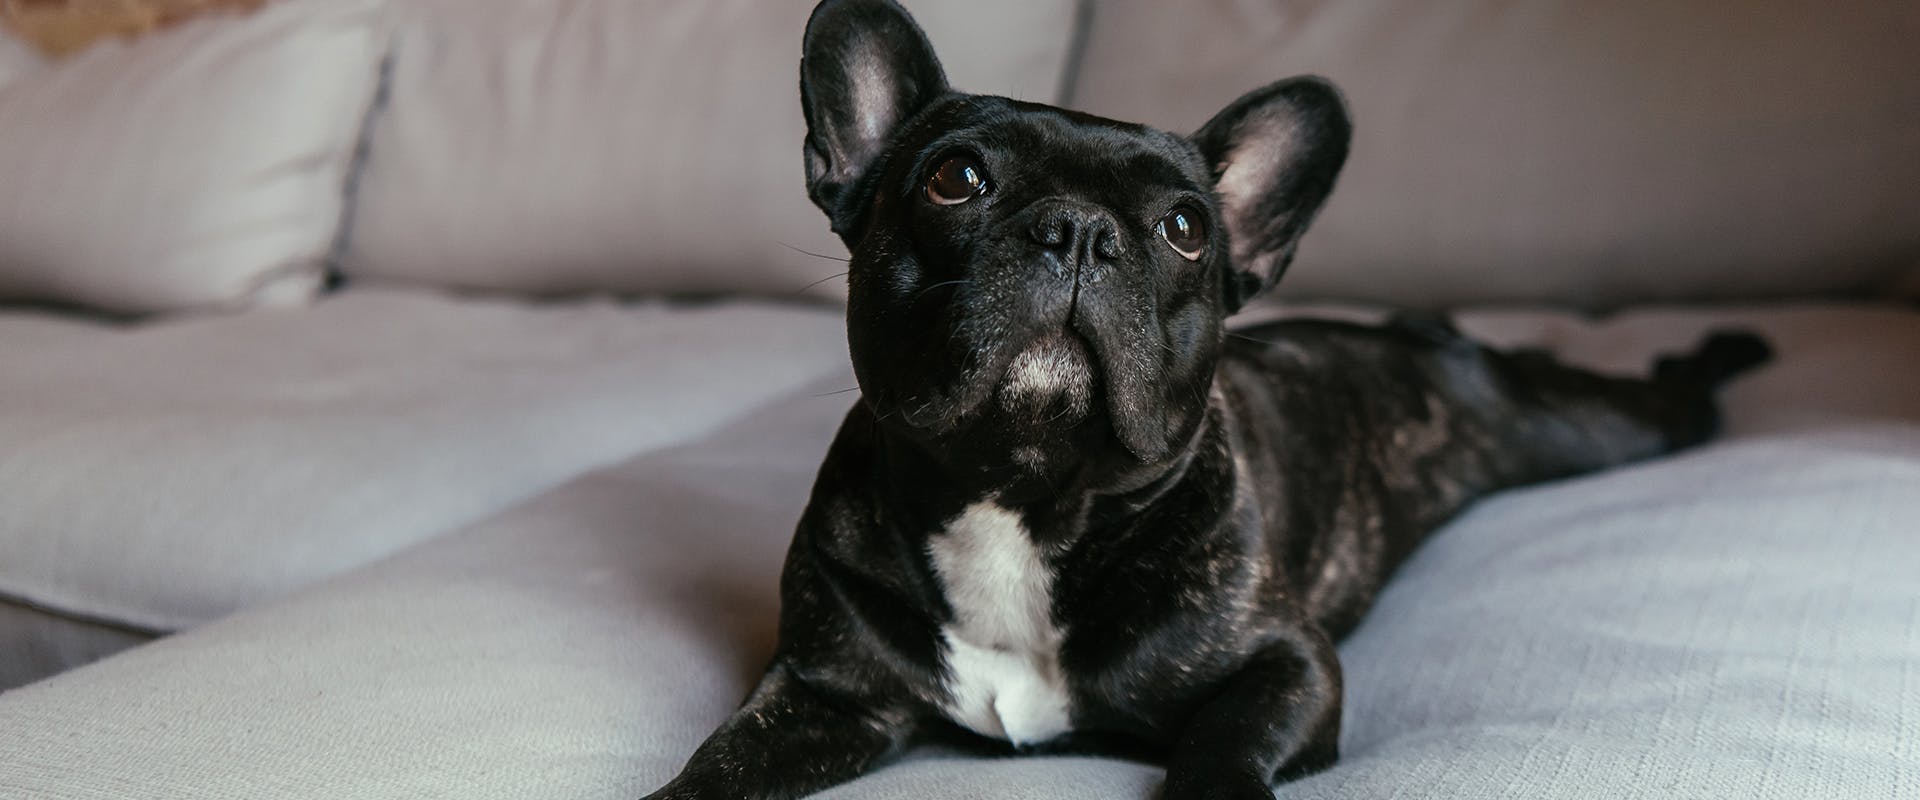 A black French bulldog sitting on a grey sofa, looking upwards